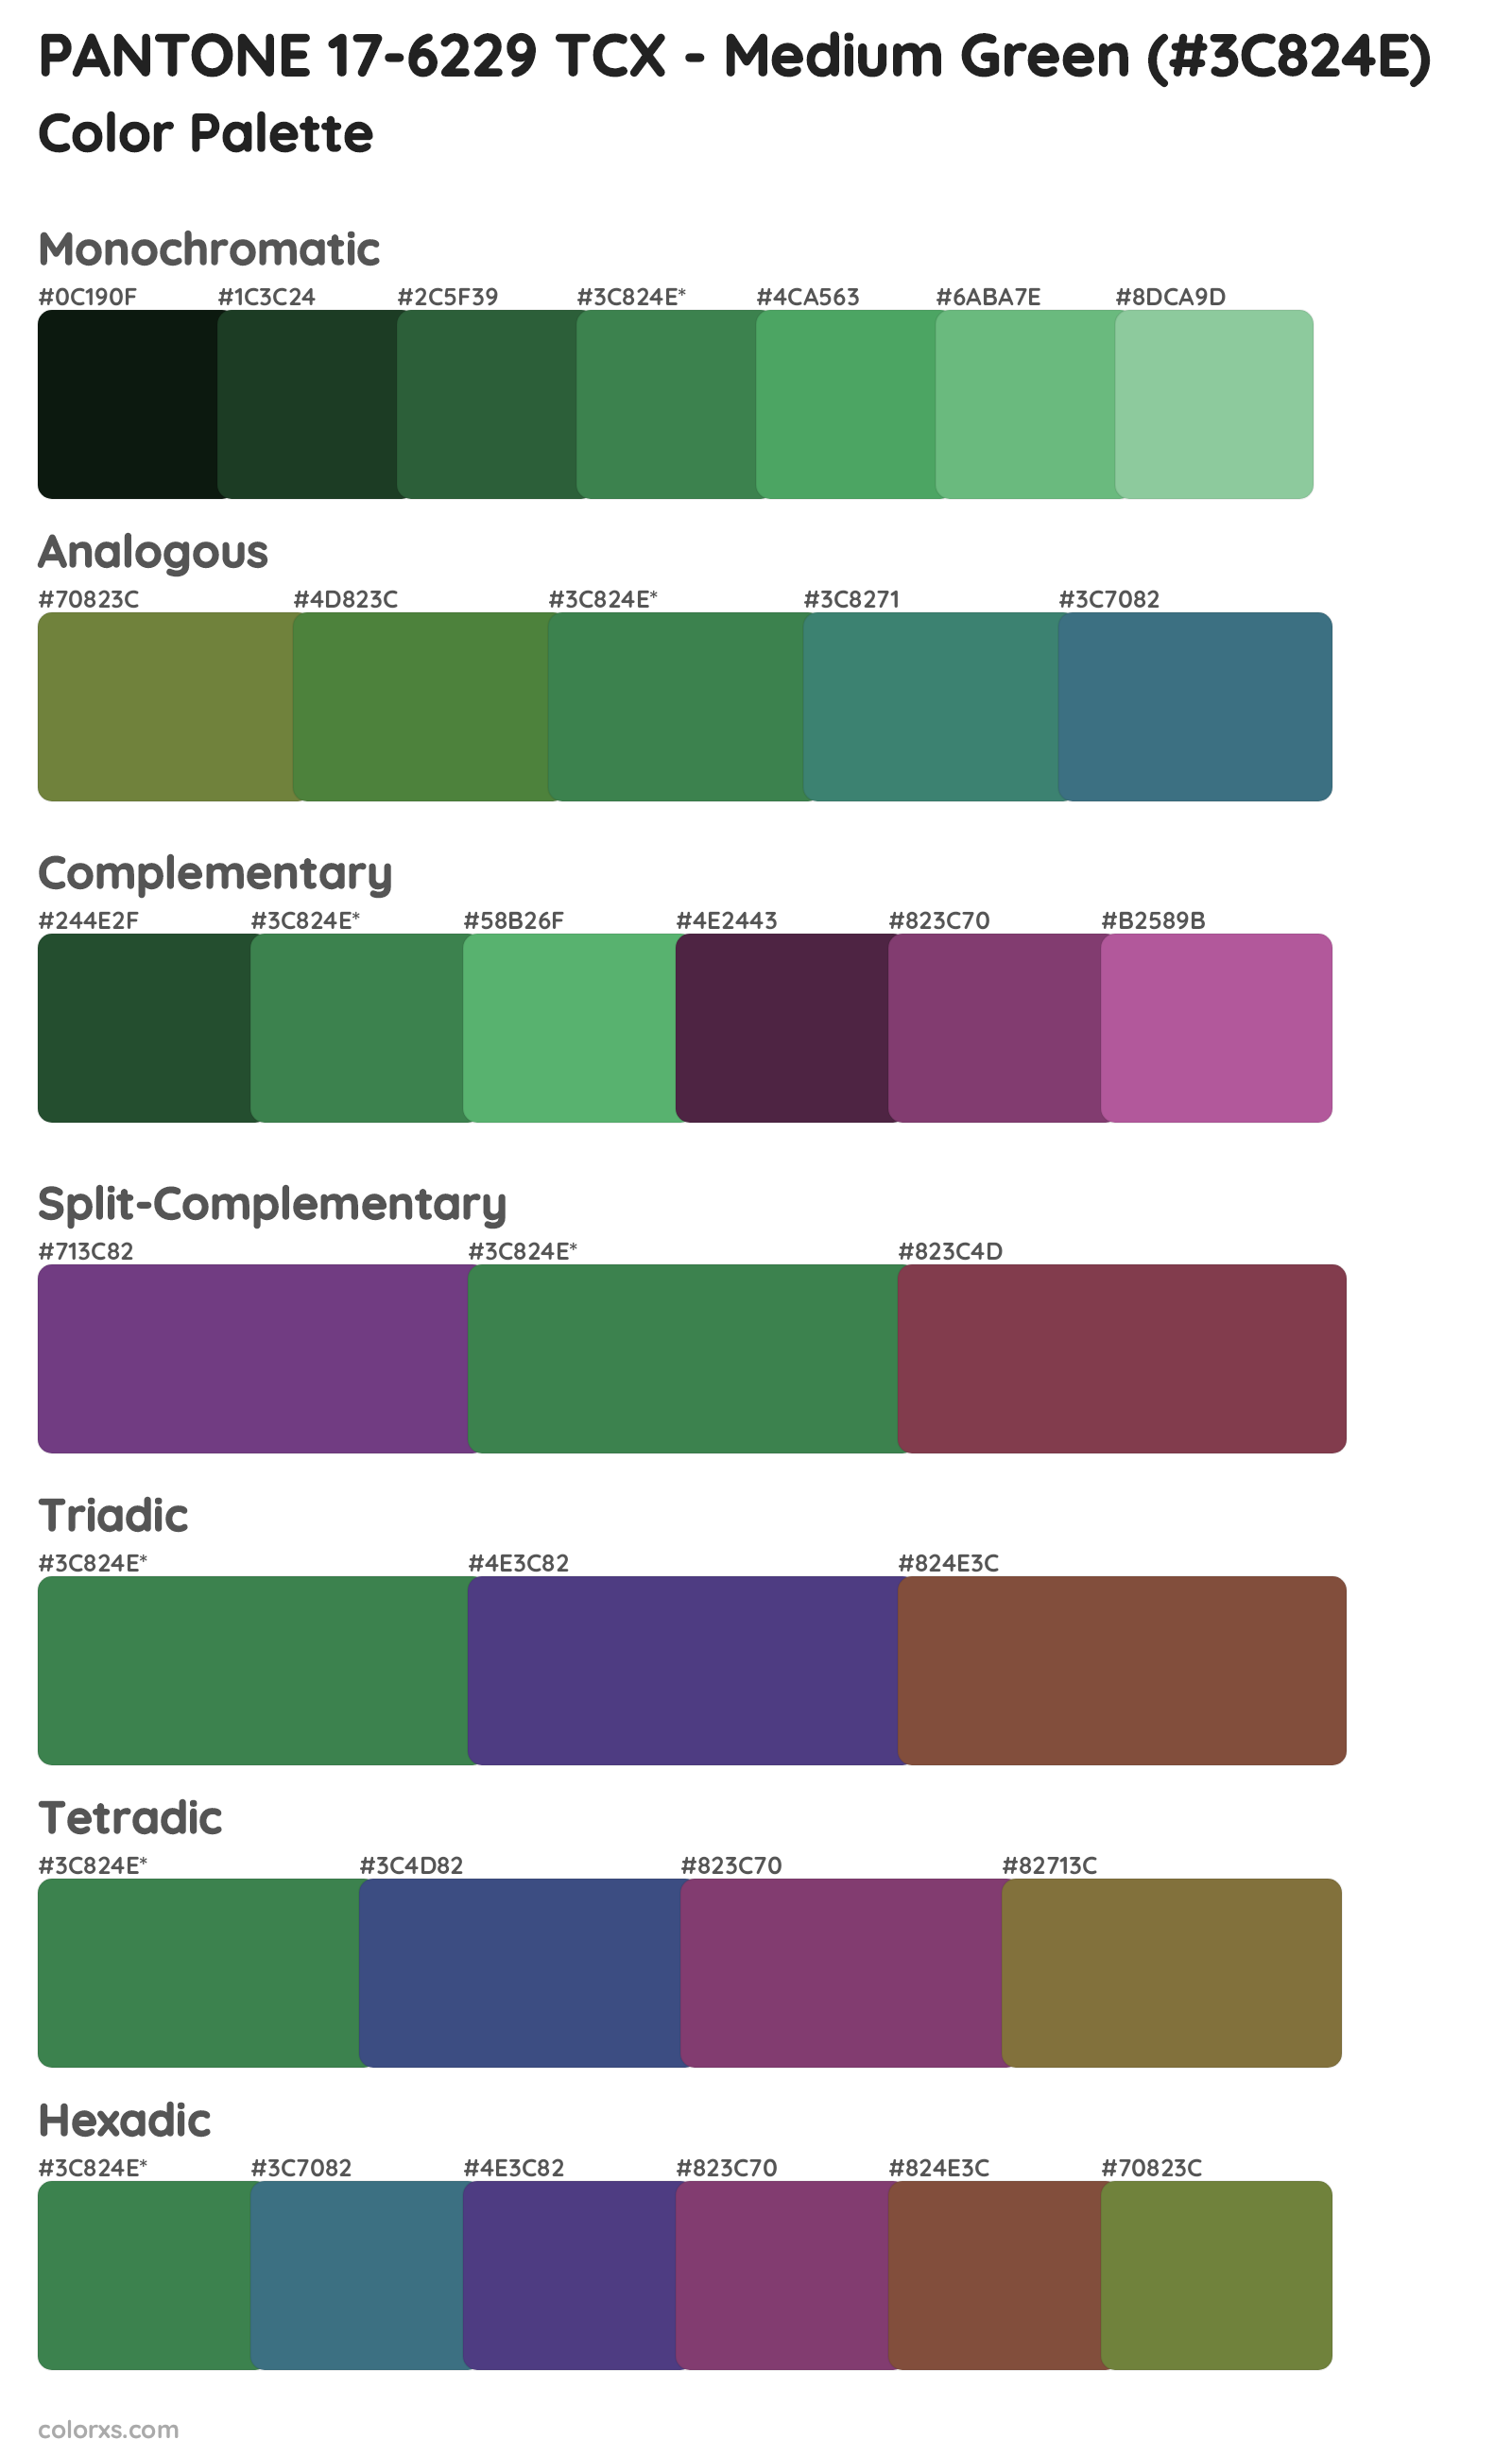 PANTONE 17-6229 TCX - Medium Green Color Scheme Palettes